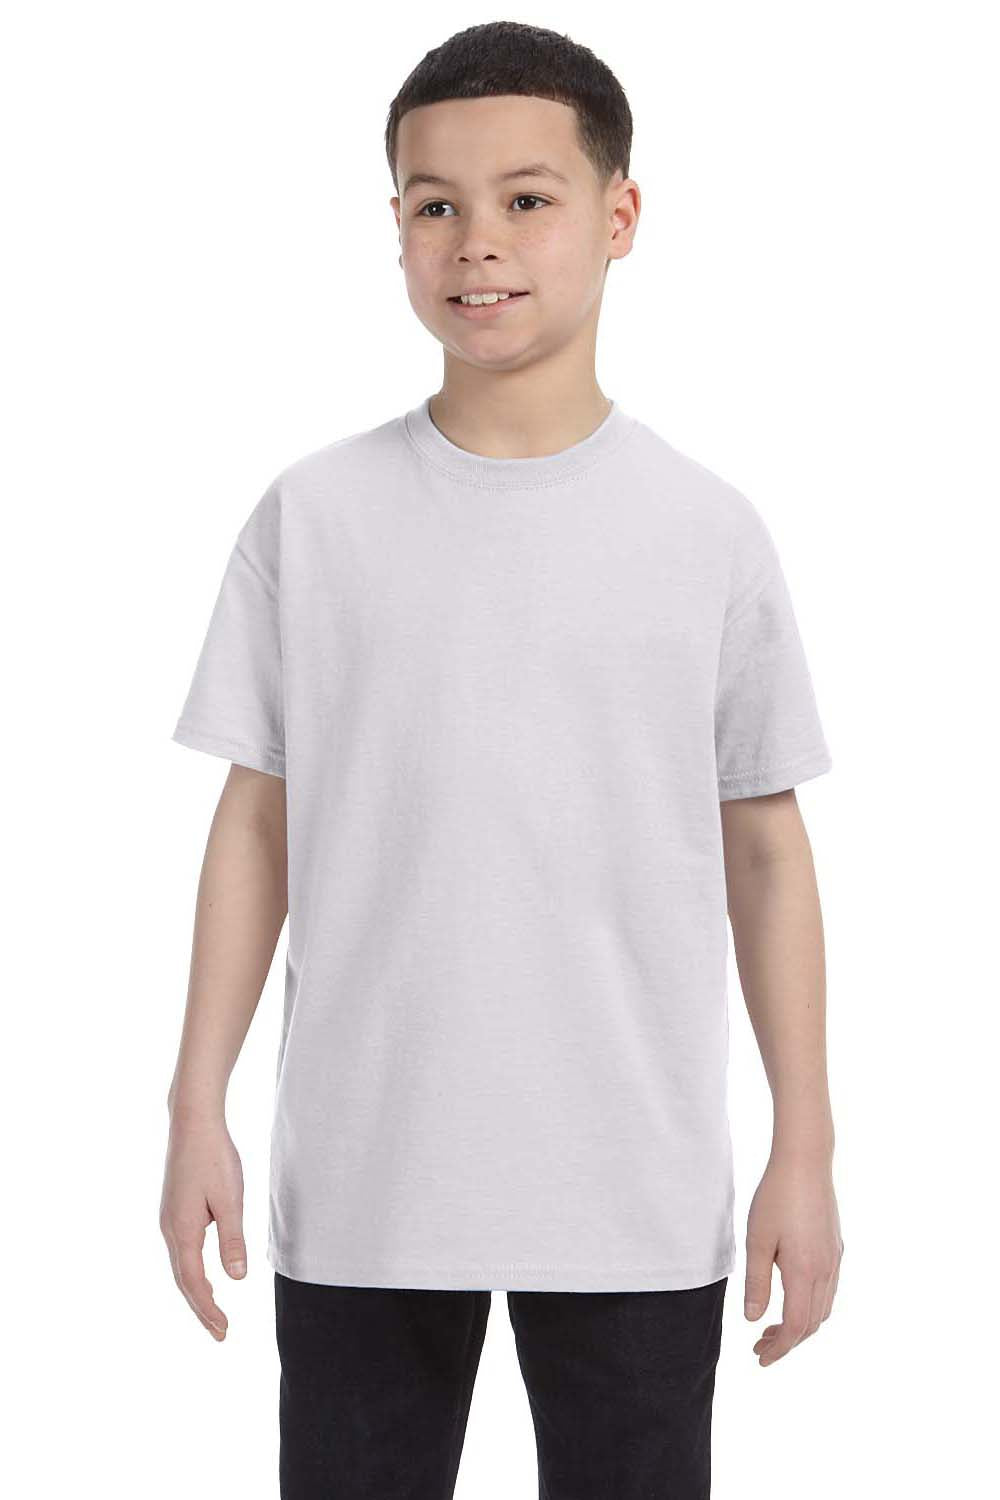 Hanes 54500 Youth ComfortSoft Short Sleeve Crewneck T-Shirt Ash Grey Front